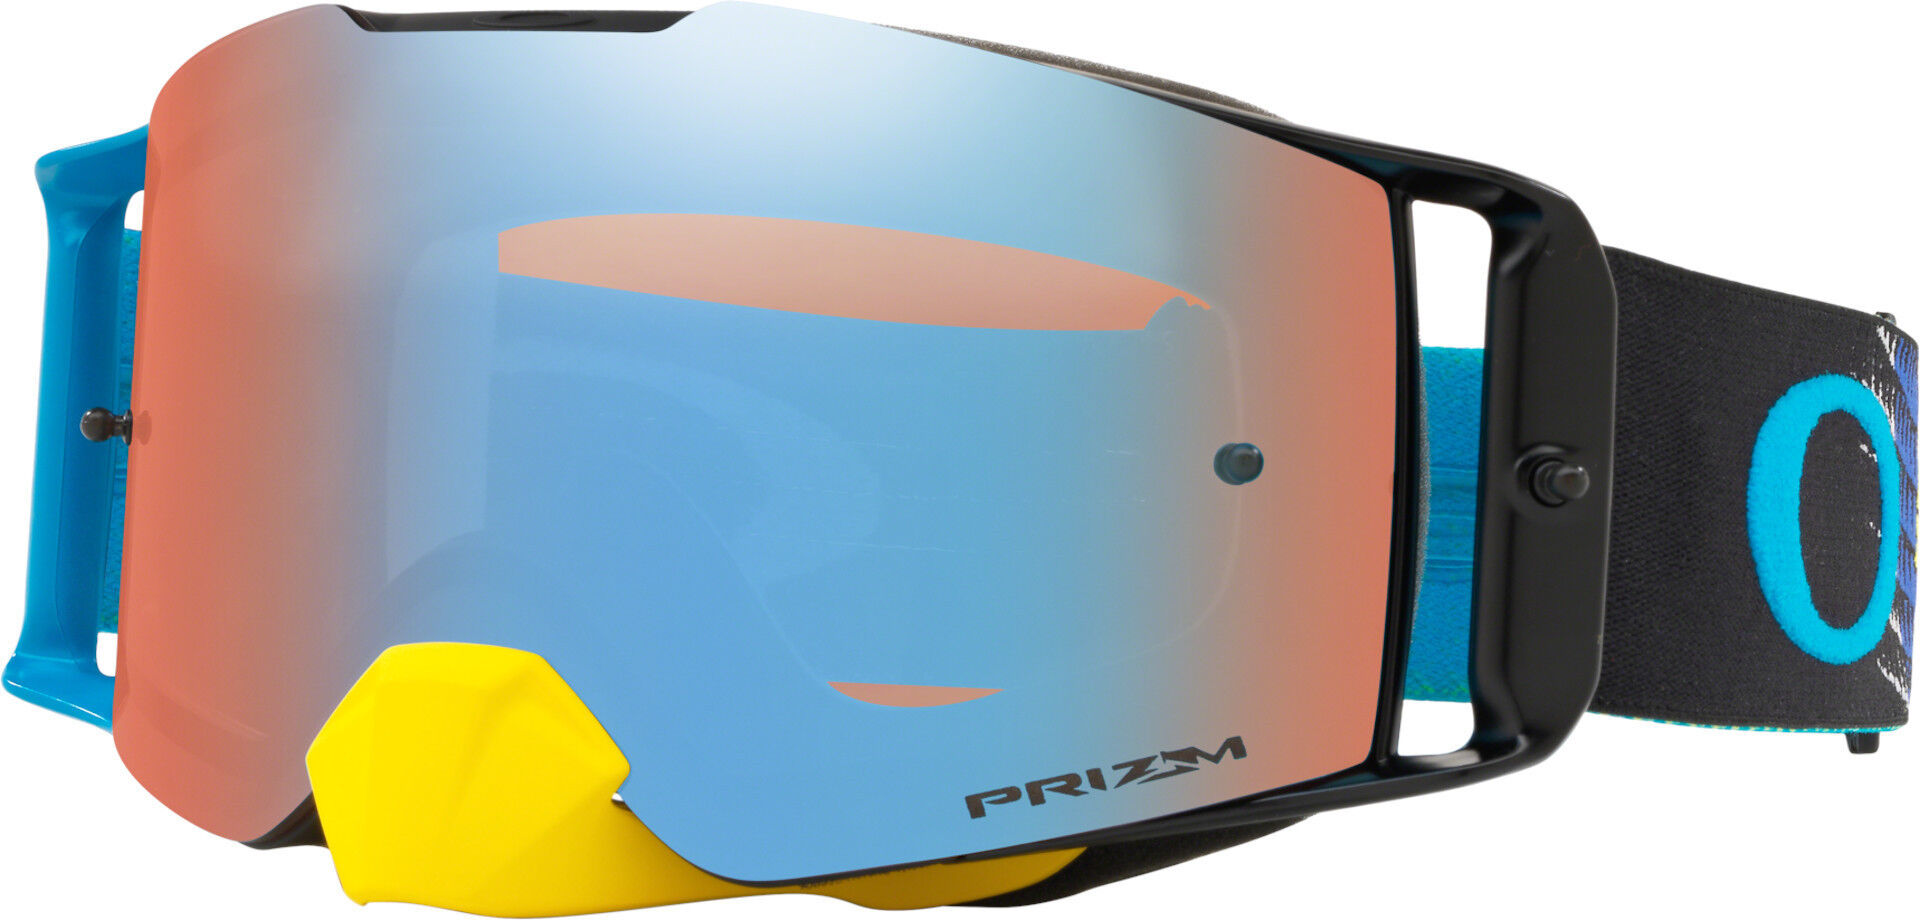 Oakley Front Line Dissolve Gafas de Motocross - Azul Amarillo (un tamaño)